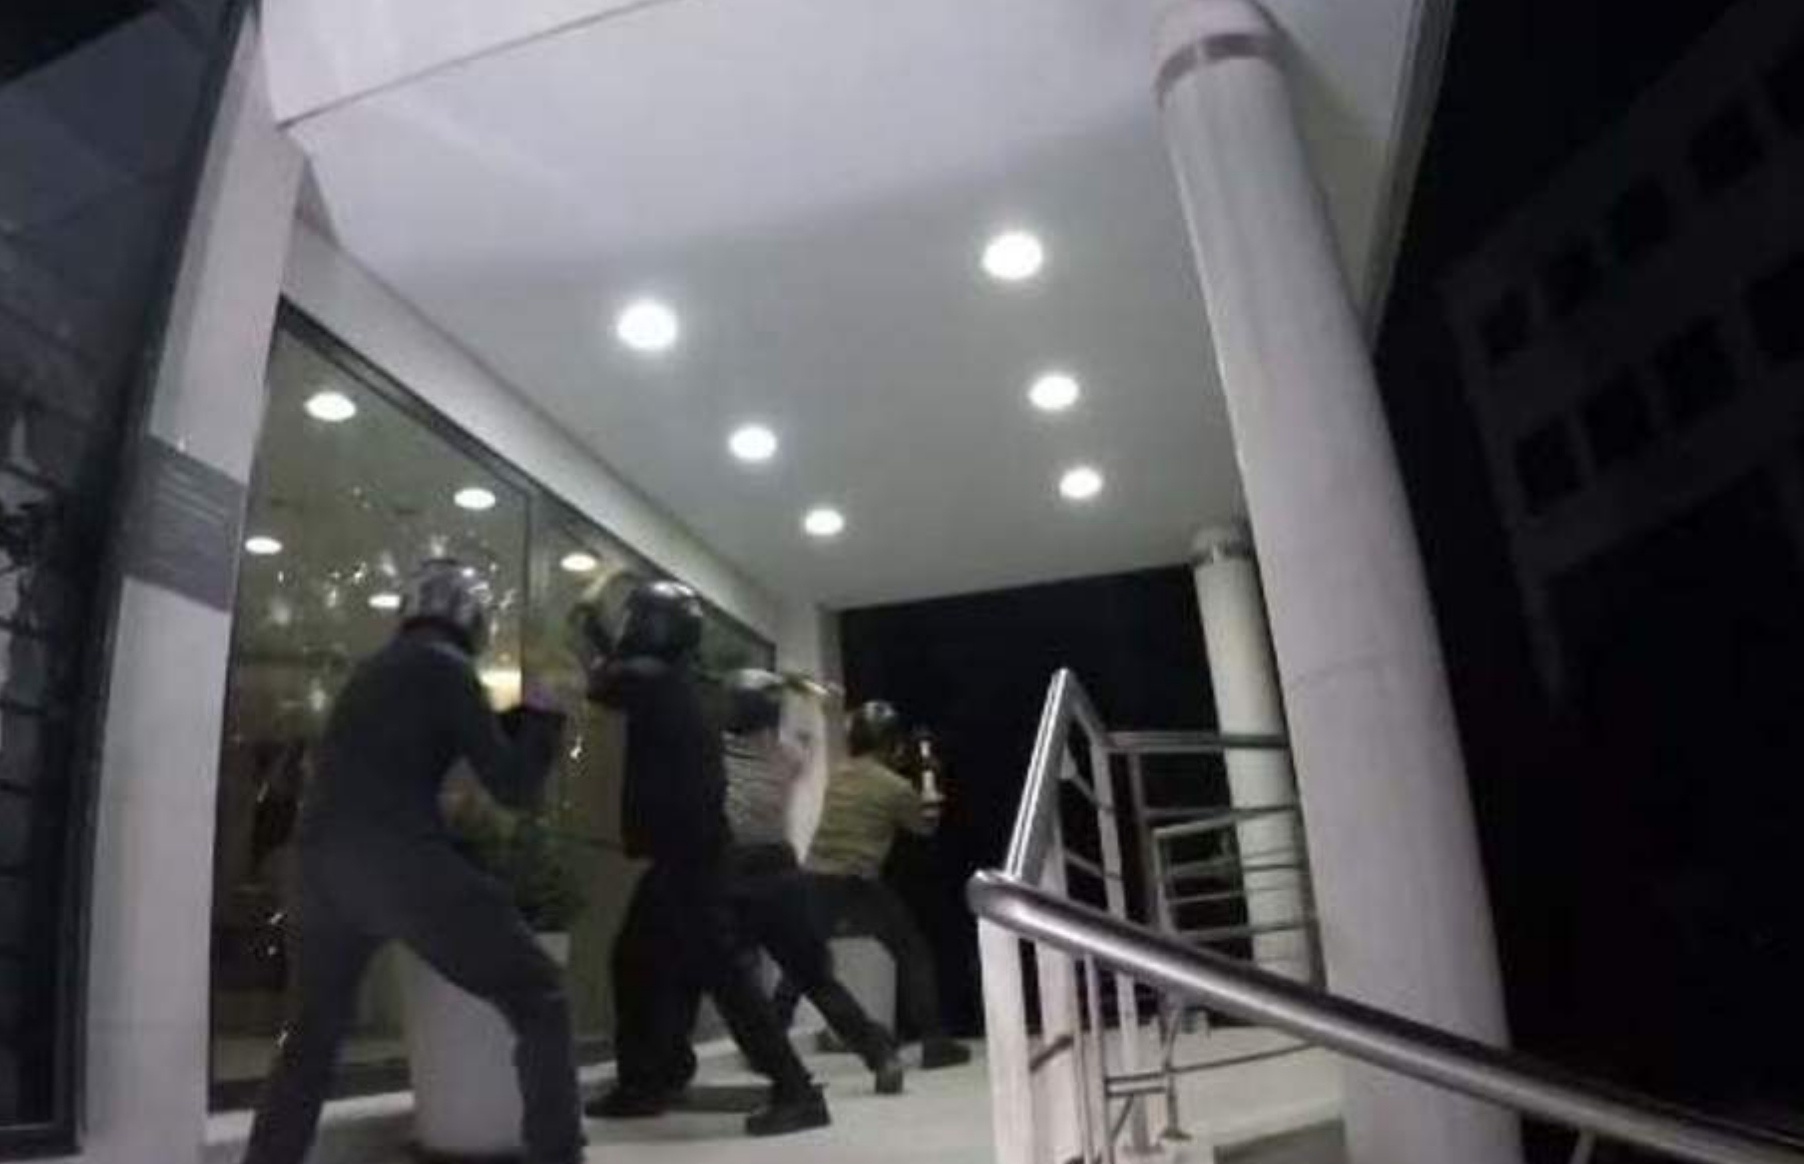 Επίθεση στα κεντρικά γραφεία του ομίλου επιχειρήσεων Μυτιληναίος